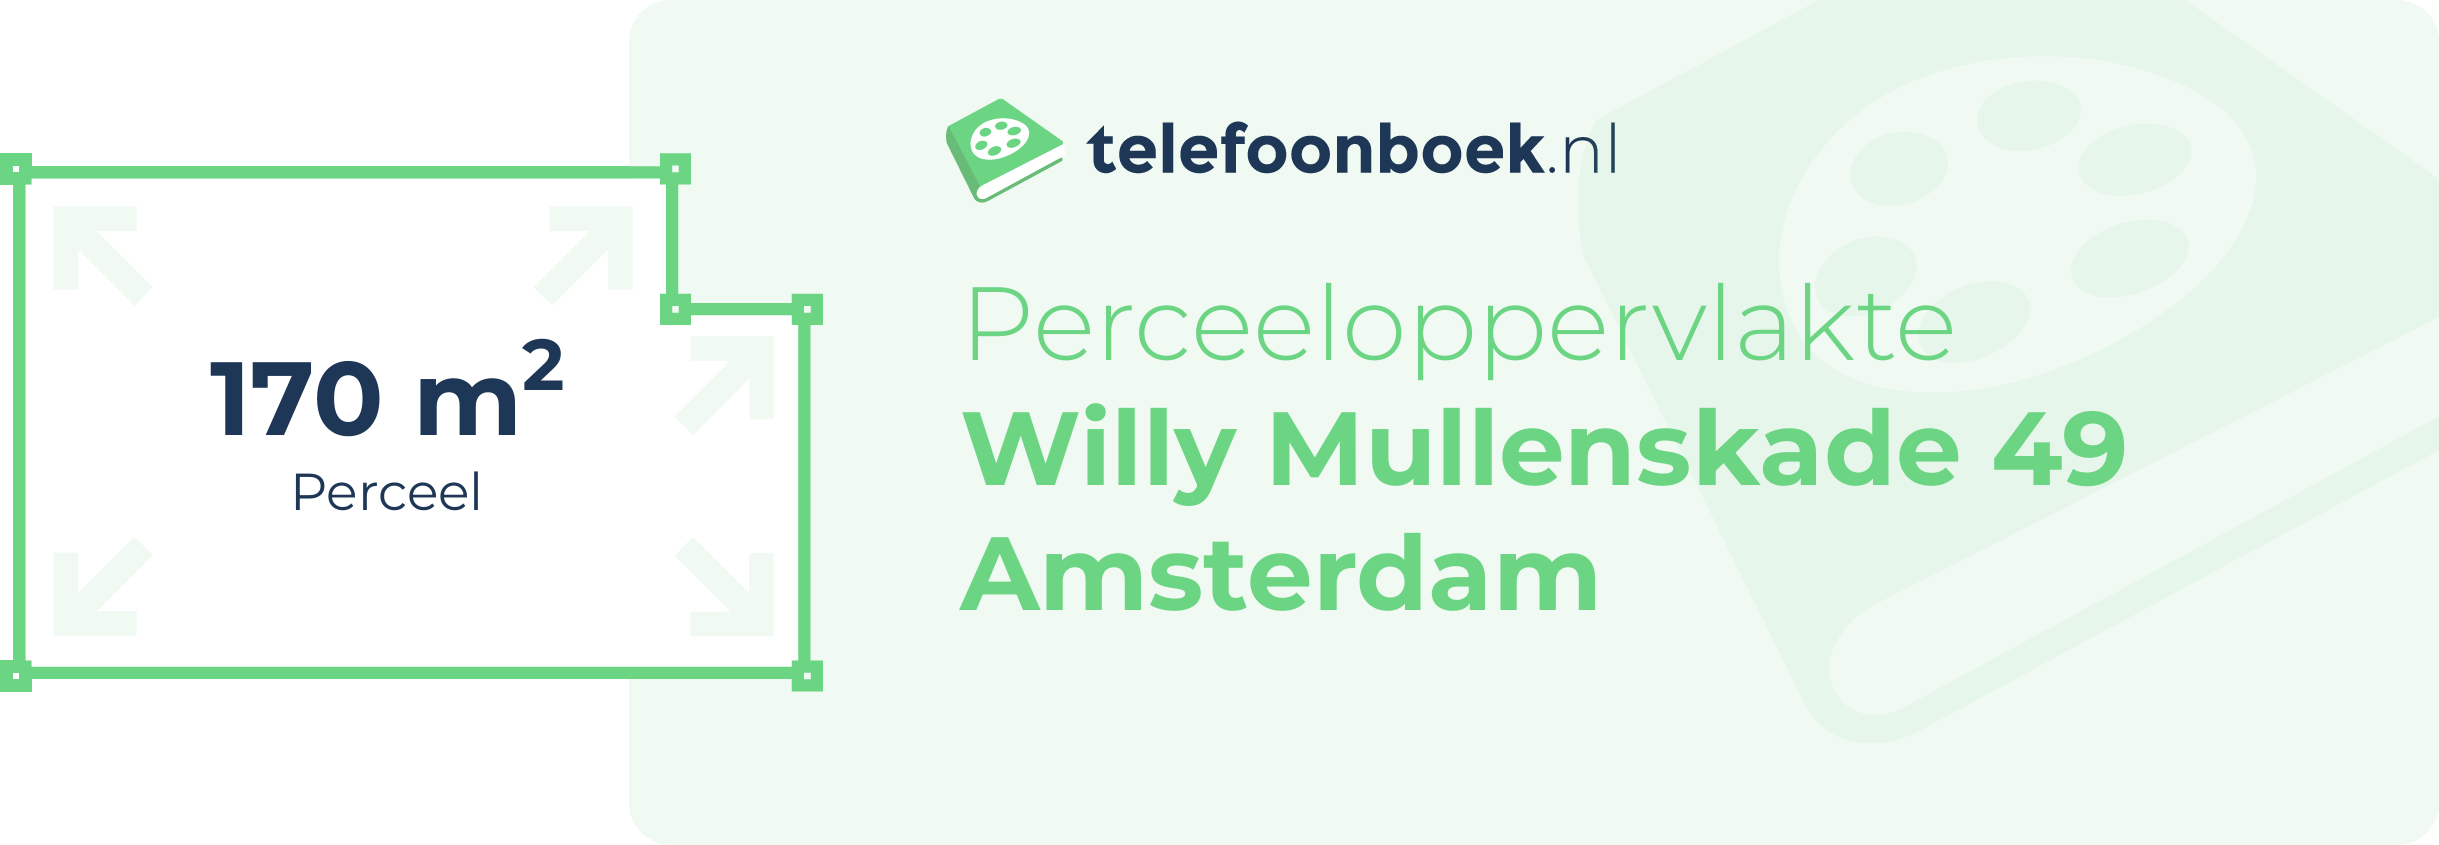 Perceeloppervlakte Willy Mullenskade 49 Amsterdam